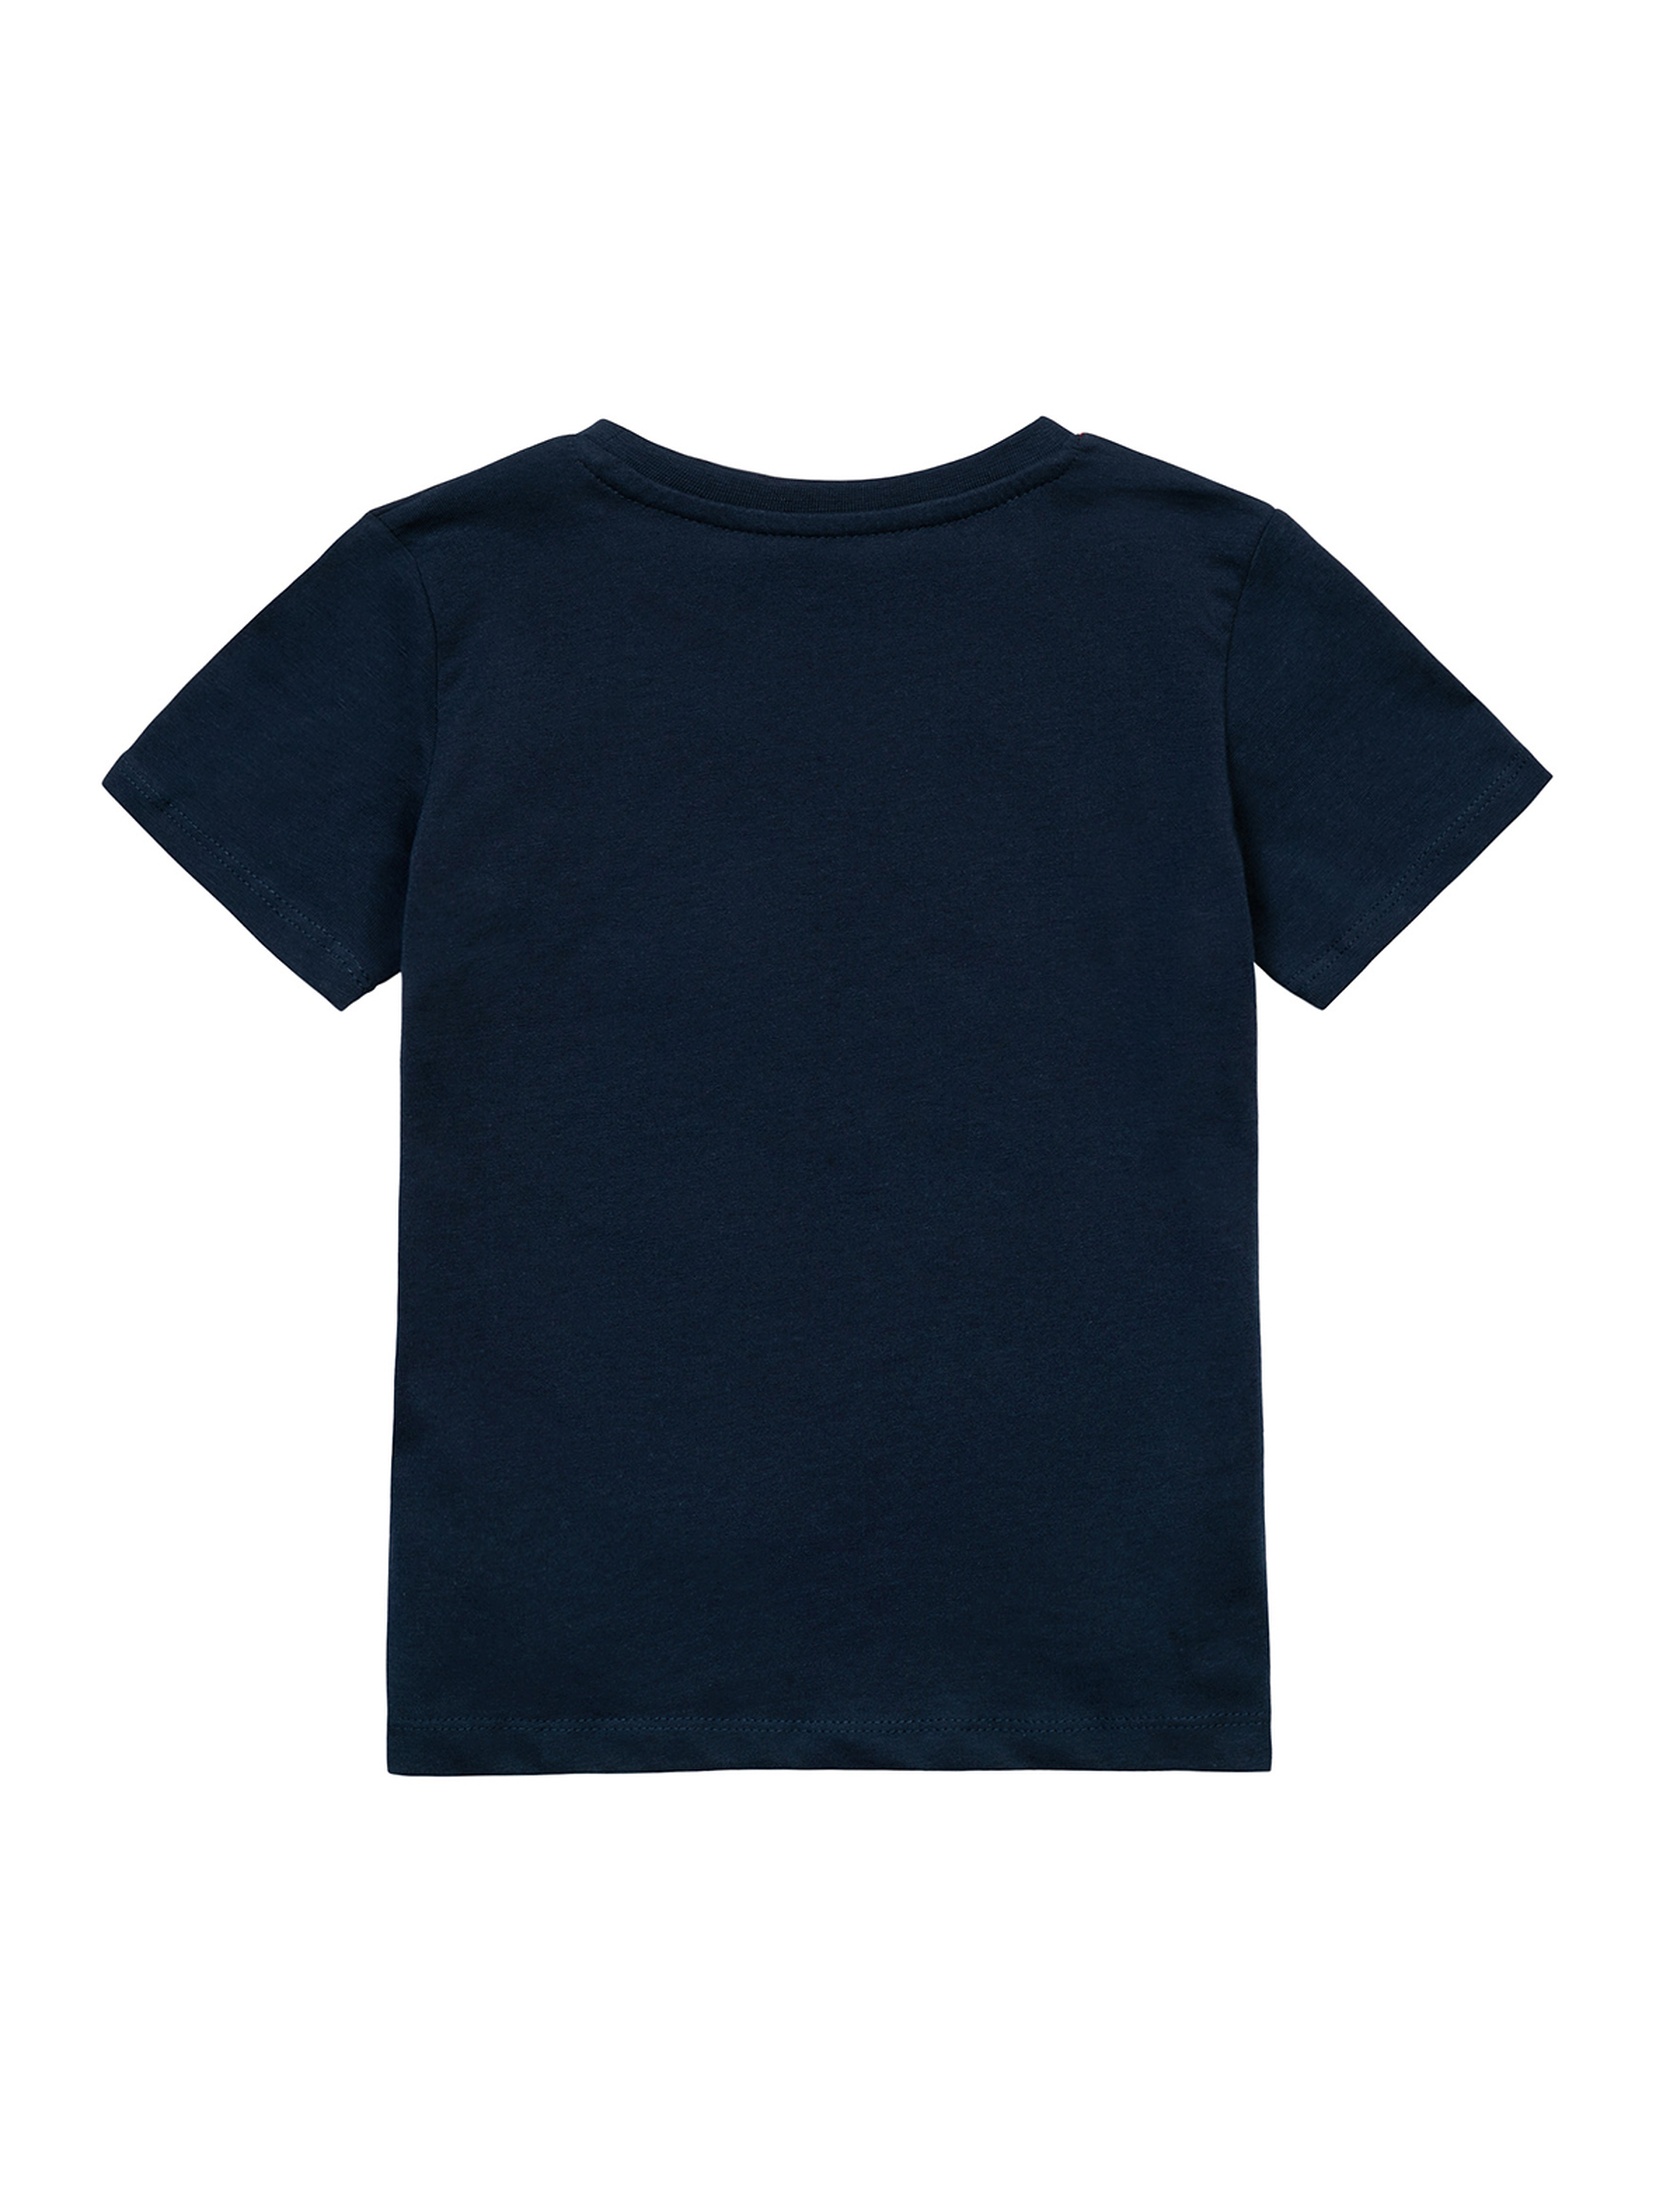 Bawełniany t-shirt z nadrukiem dla chłopca